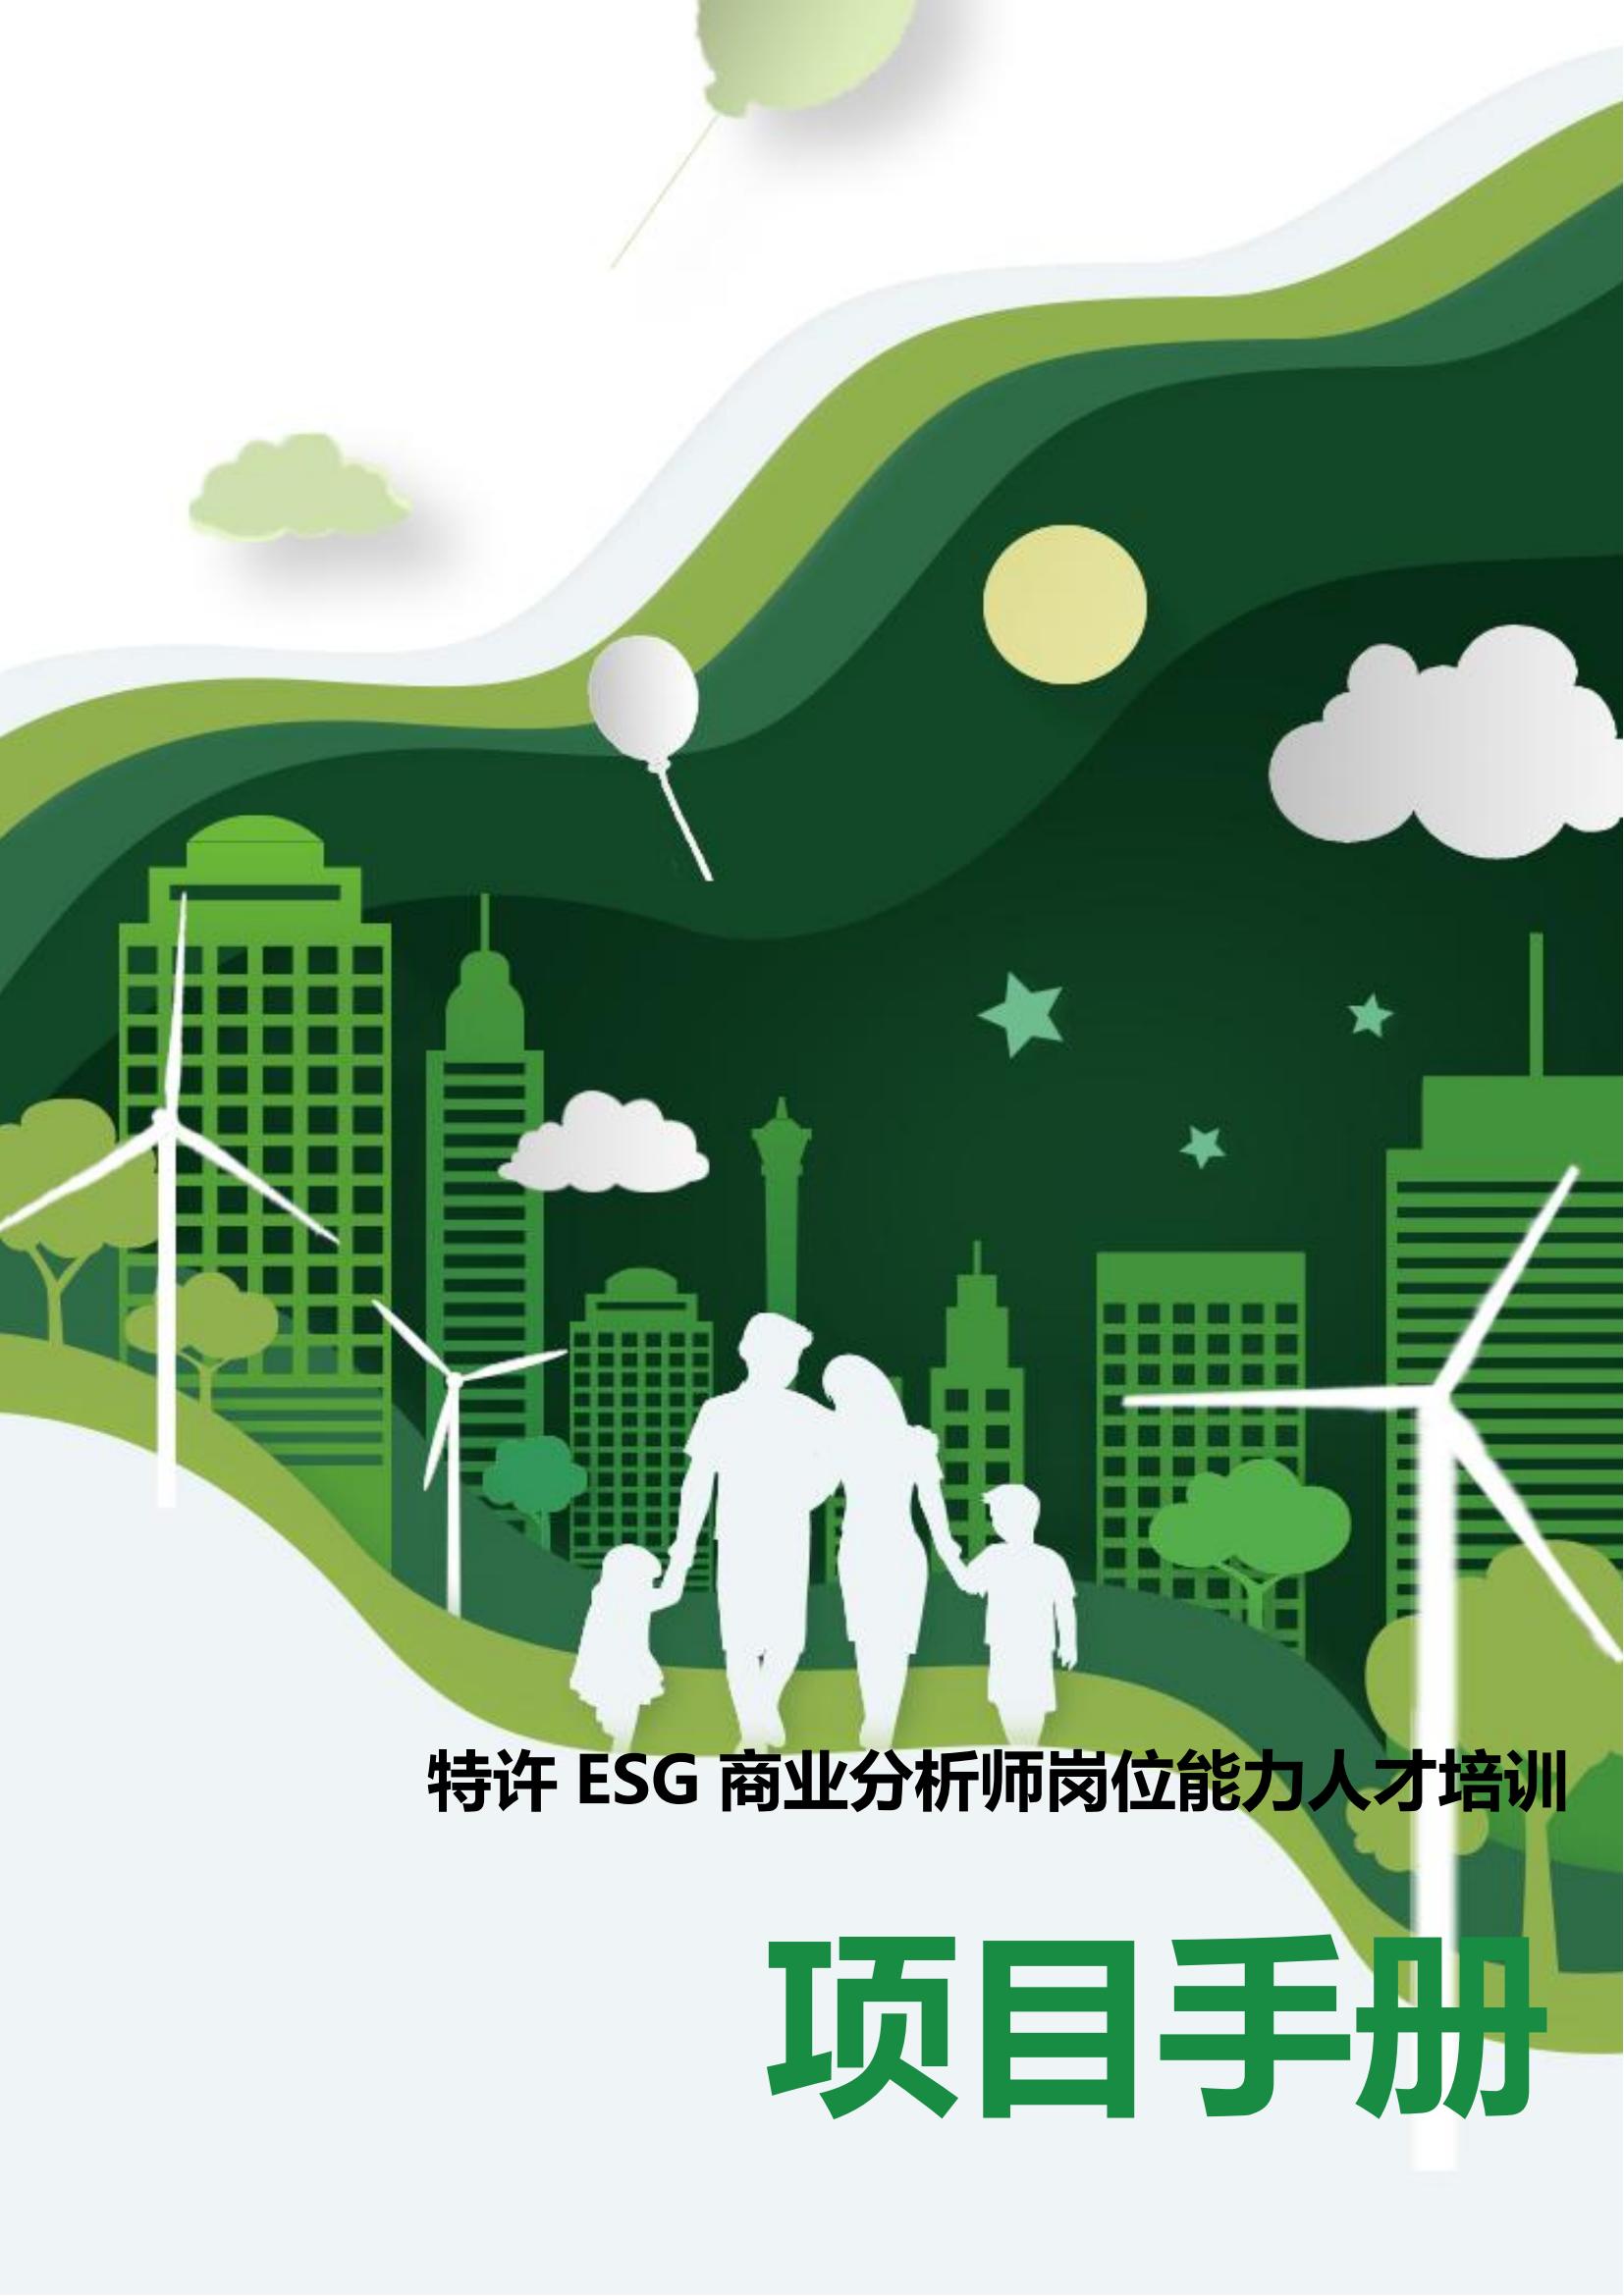 特许ESG商业分析师项目手册_00.jpg